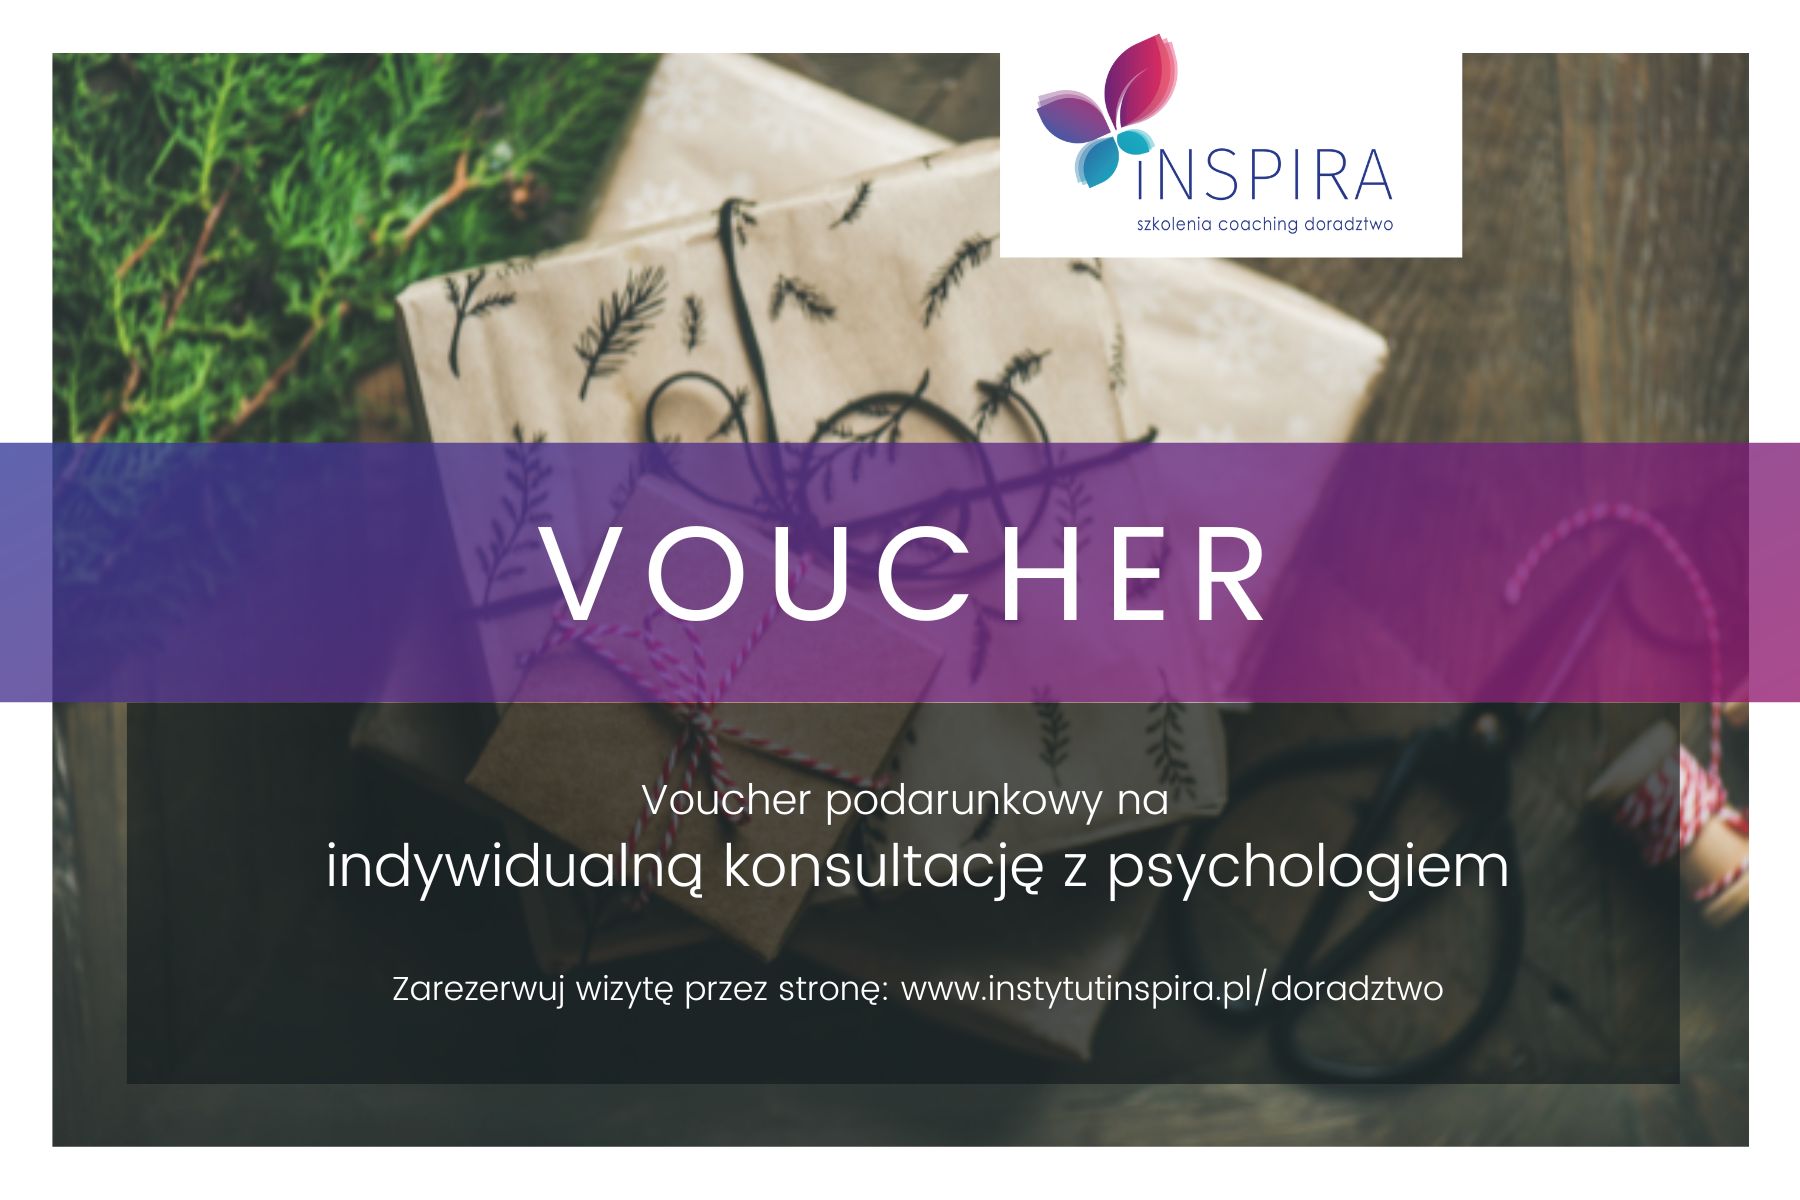 Voucher - konsultacja z psychologiem